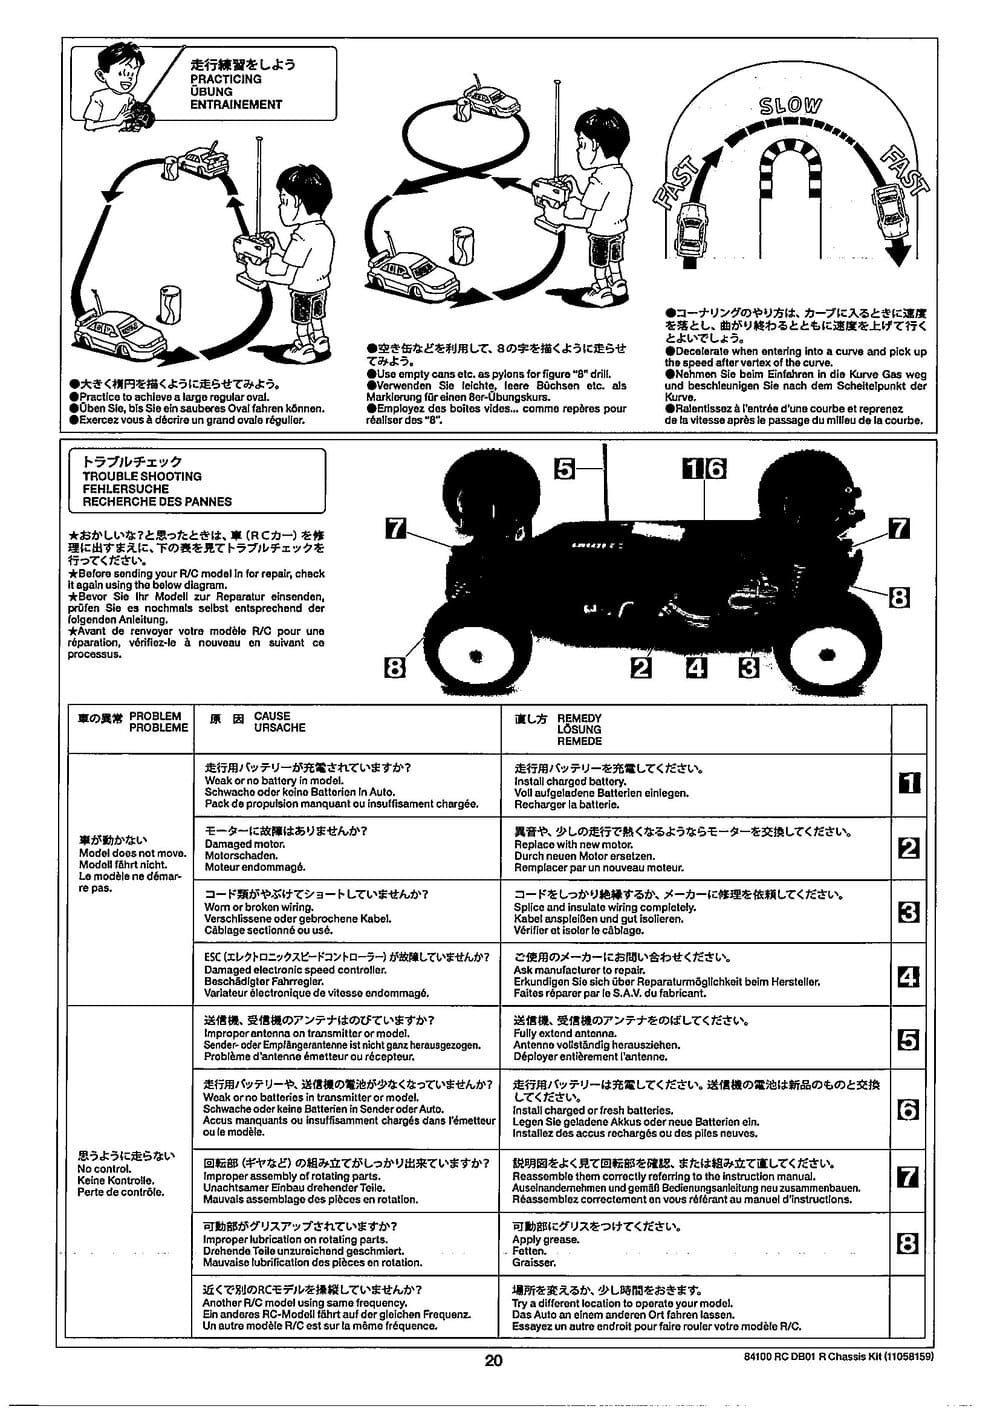 Tamiya - DB-01R Chassis - Manual - Page 20